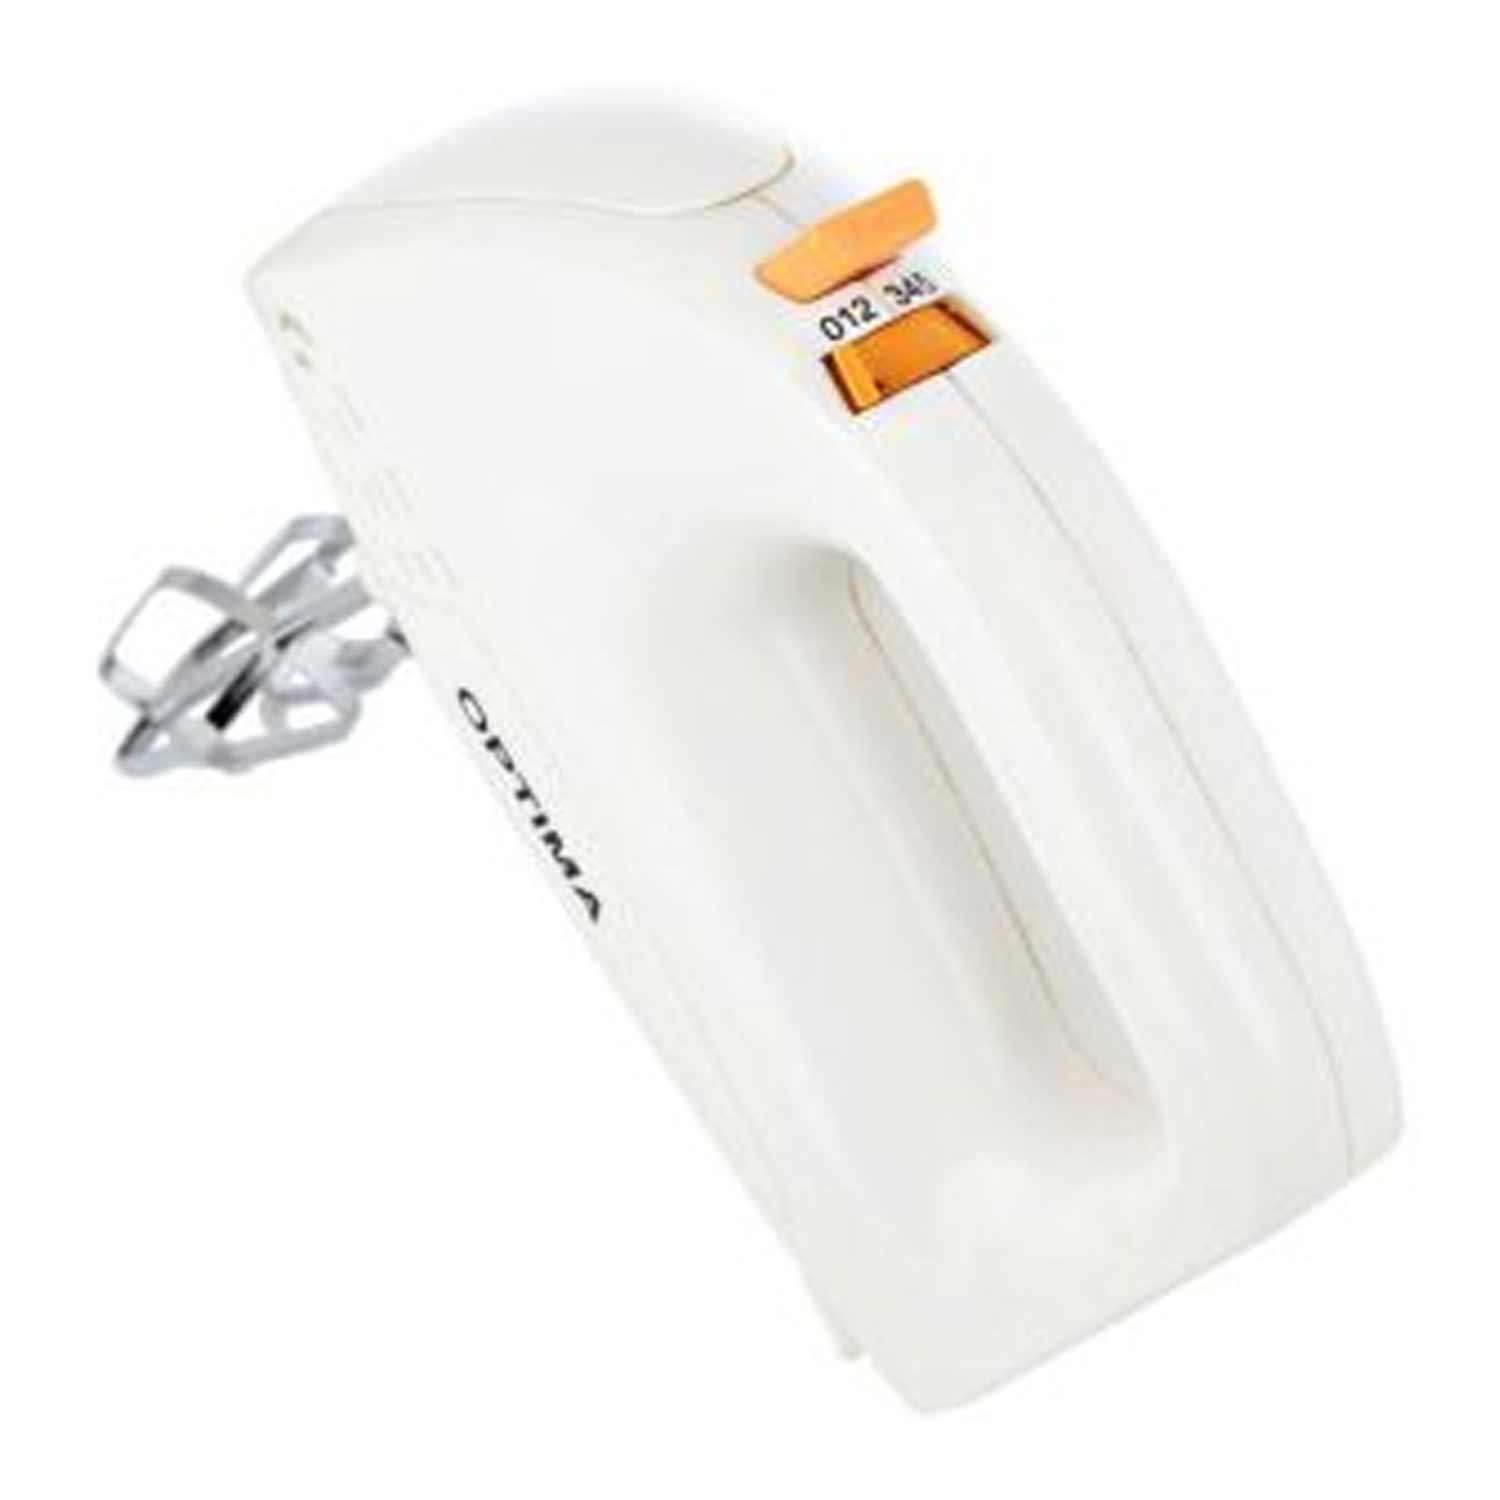 Optima HM250 170 Hand Blender  (White)